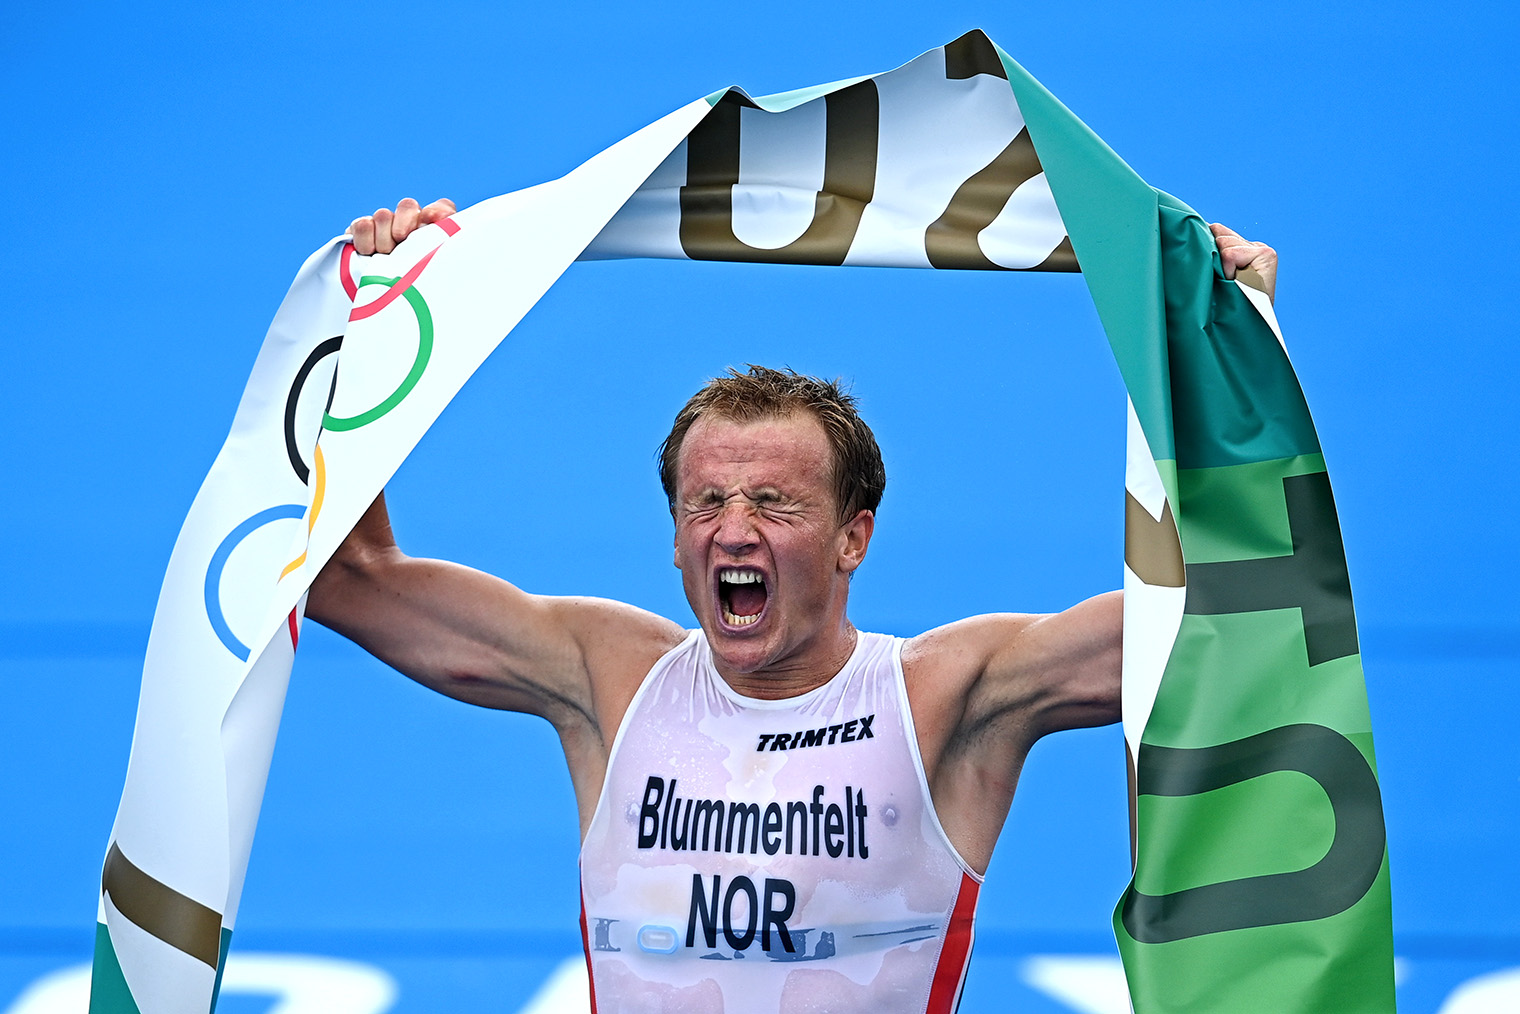 Кристиан Блюмменфельт из сборной Норвегии на Олимпиаде 2020 года в Токио. Фотография: Ramsey Cardy / Sportsfile via Getty Images